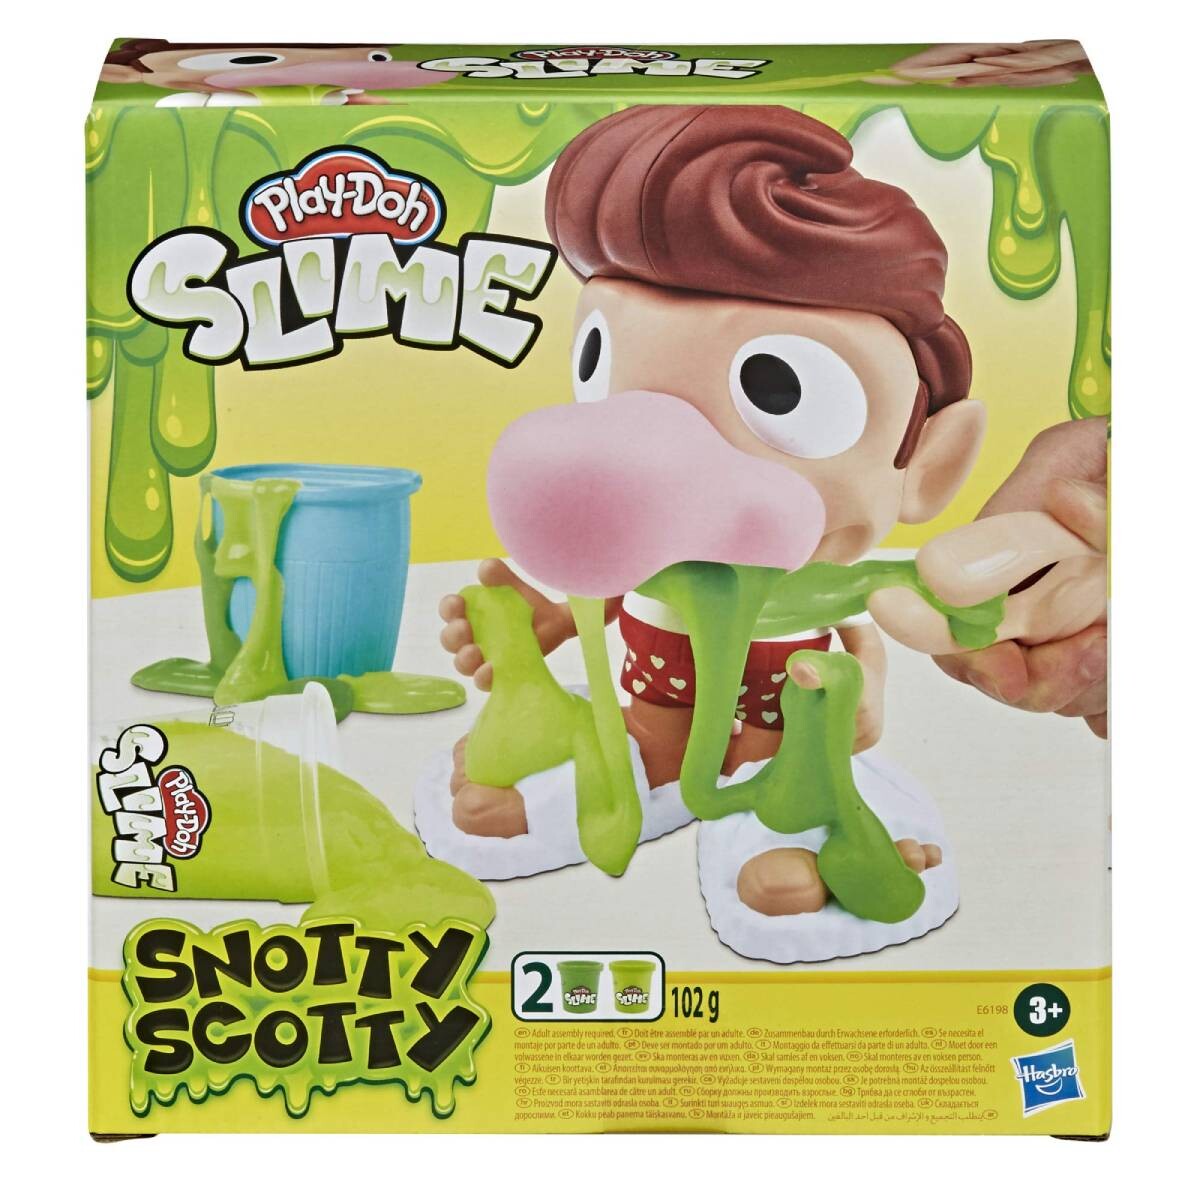 Snotty Scotty Play-Doh 